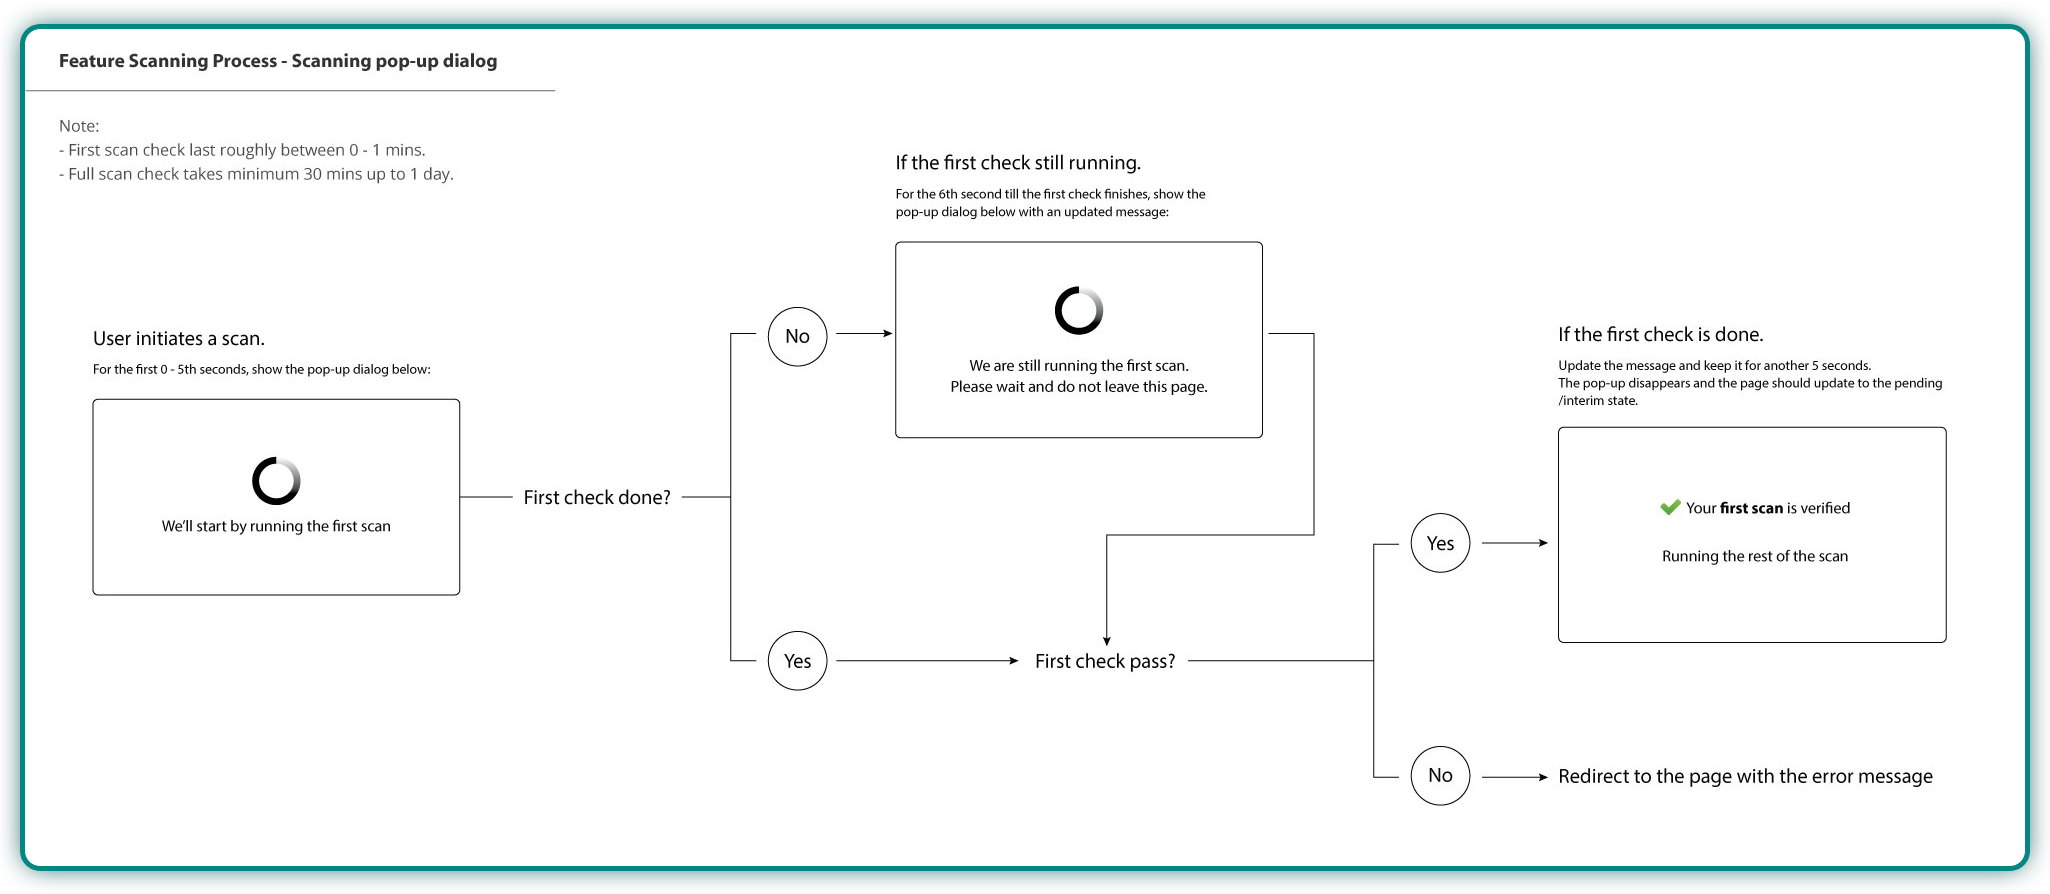 Task flow - Scanning Process System Flow